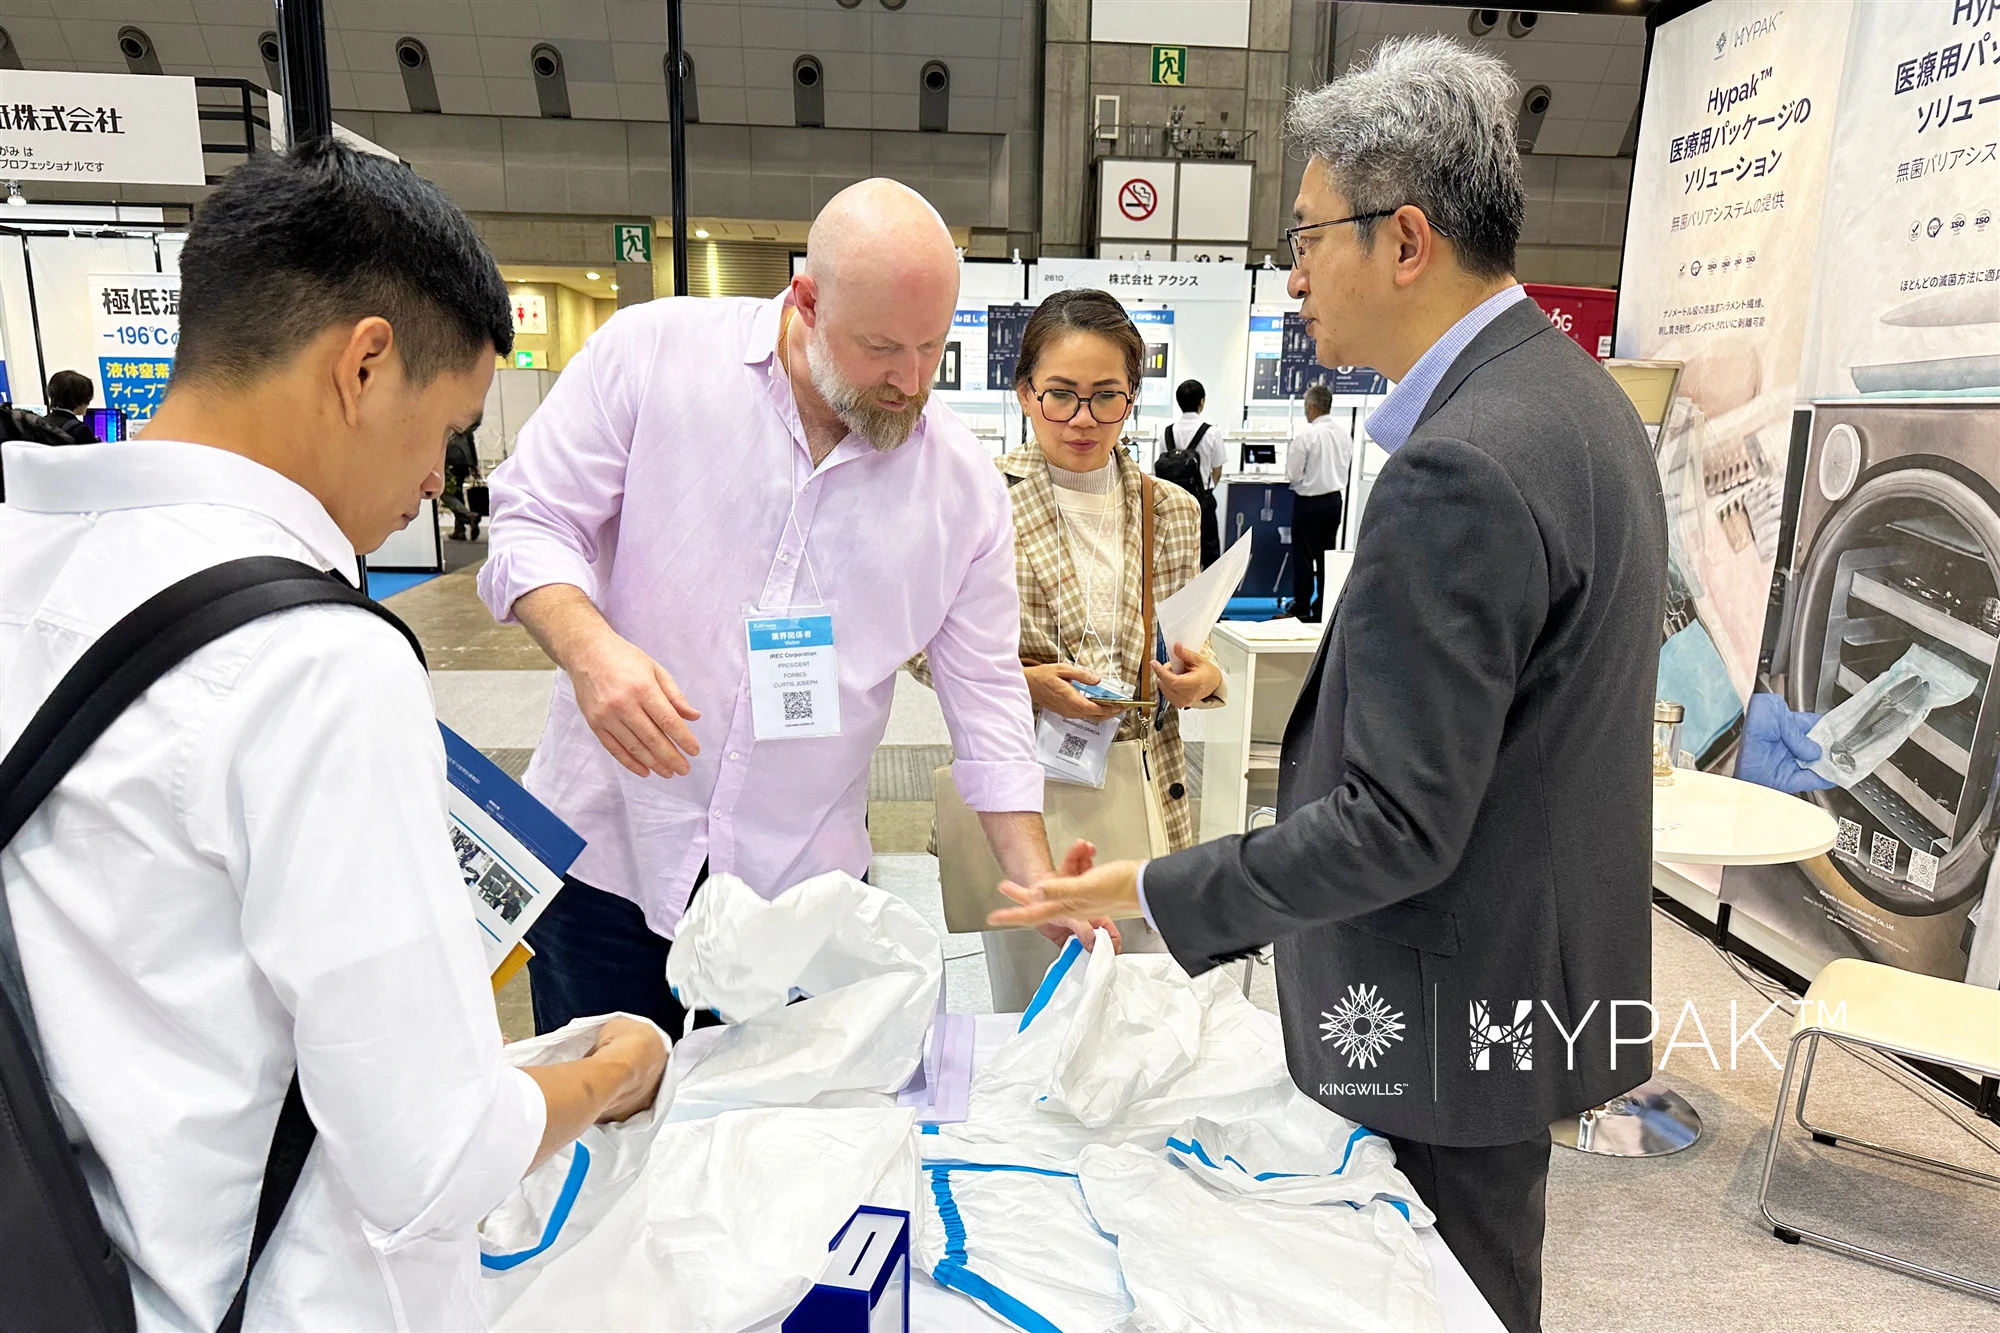 キングウィル™Medtec Japanで革新的な医療パッケージングソリューションを発表